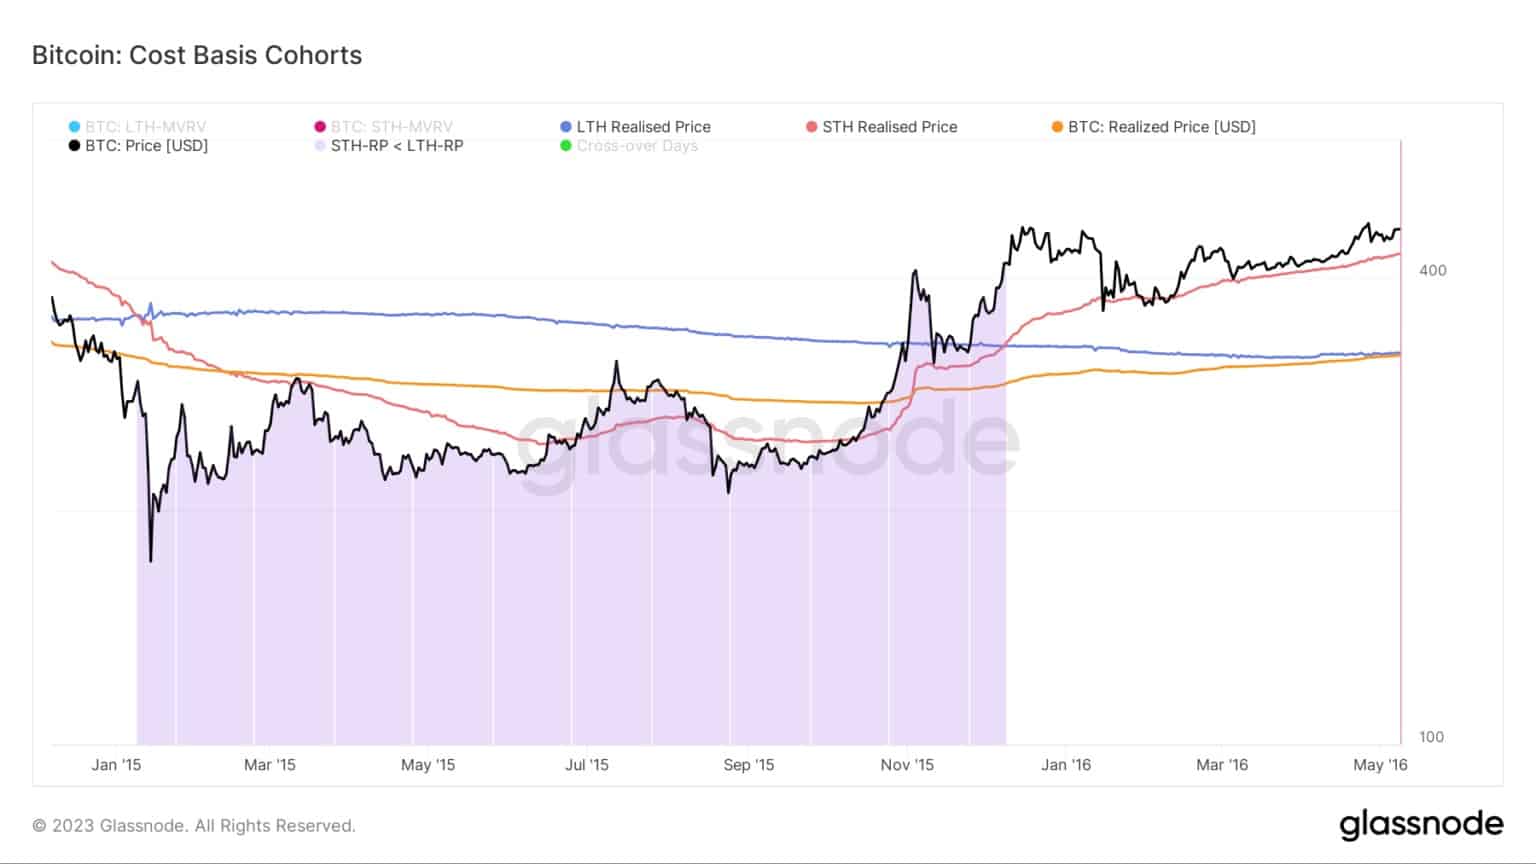 Gráfico mostrando a base de custos para coortes Bitcoin durante o mercado de ursos de 2015 (Fonte: Glassnode)